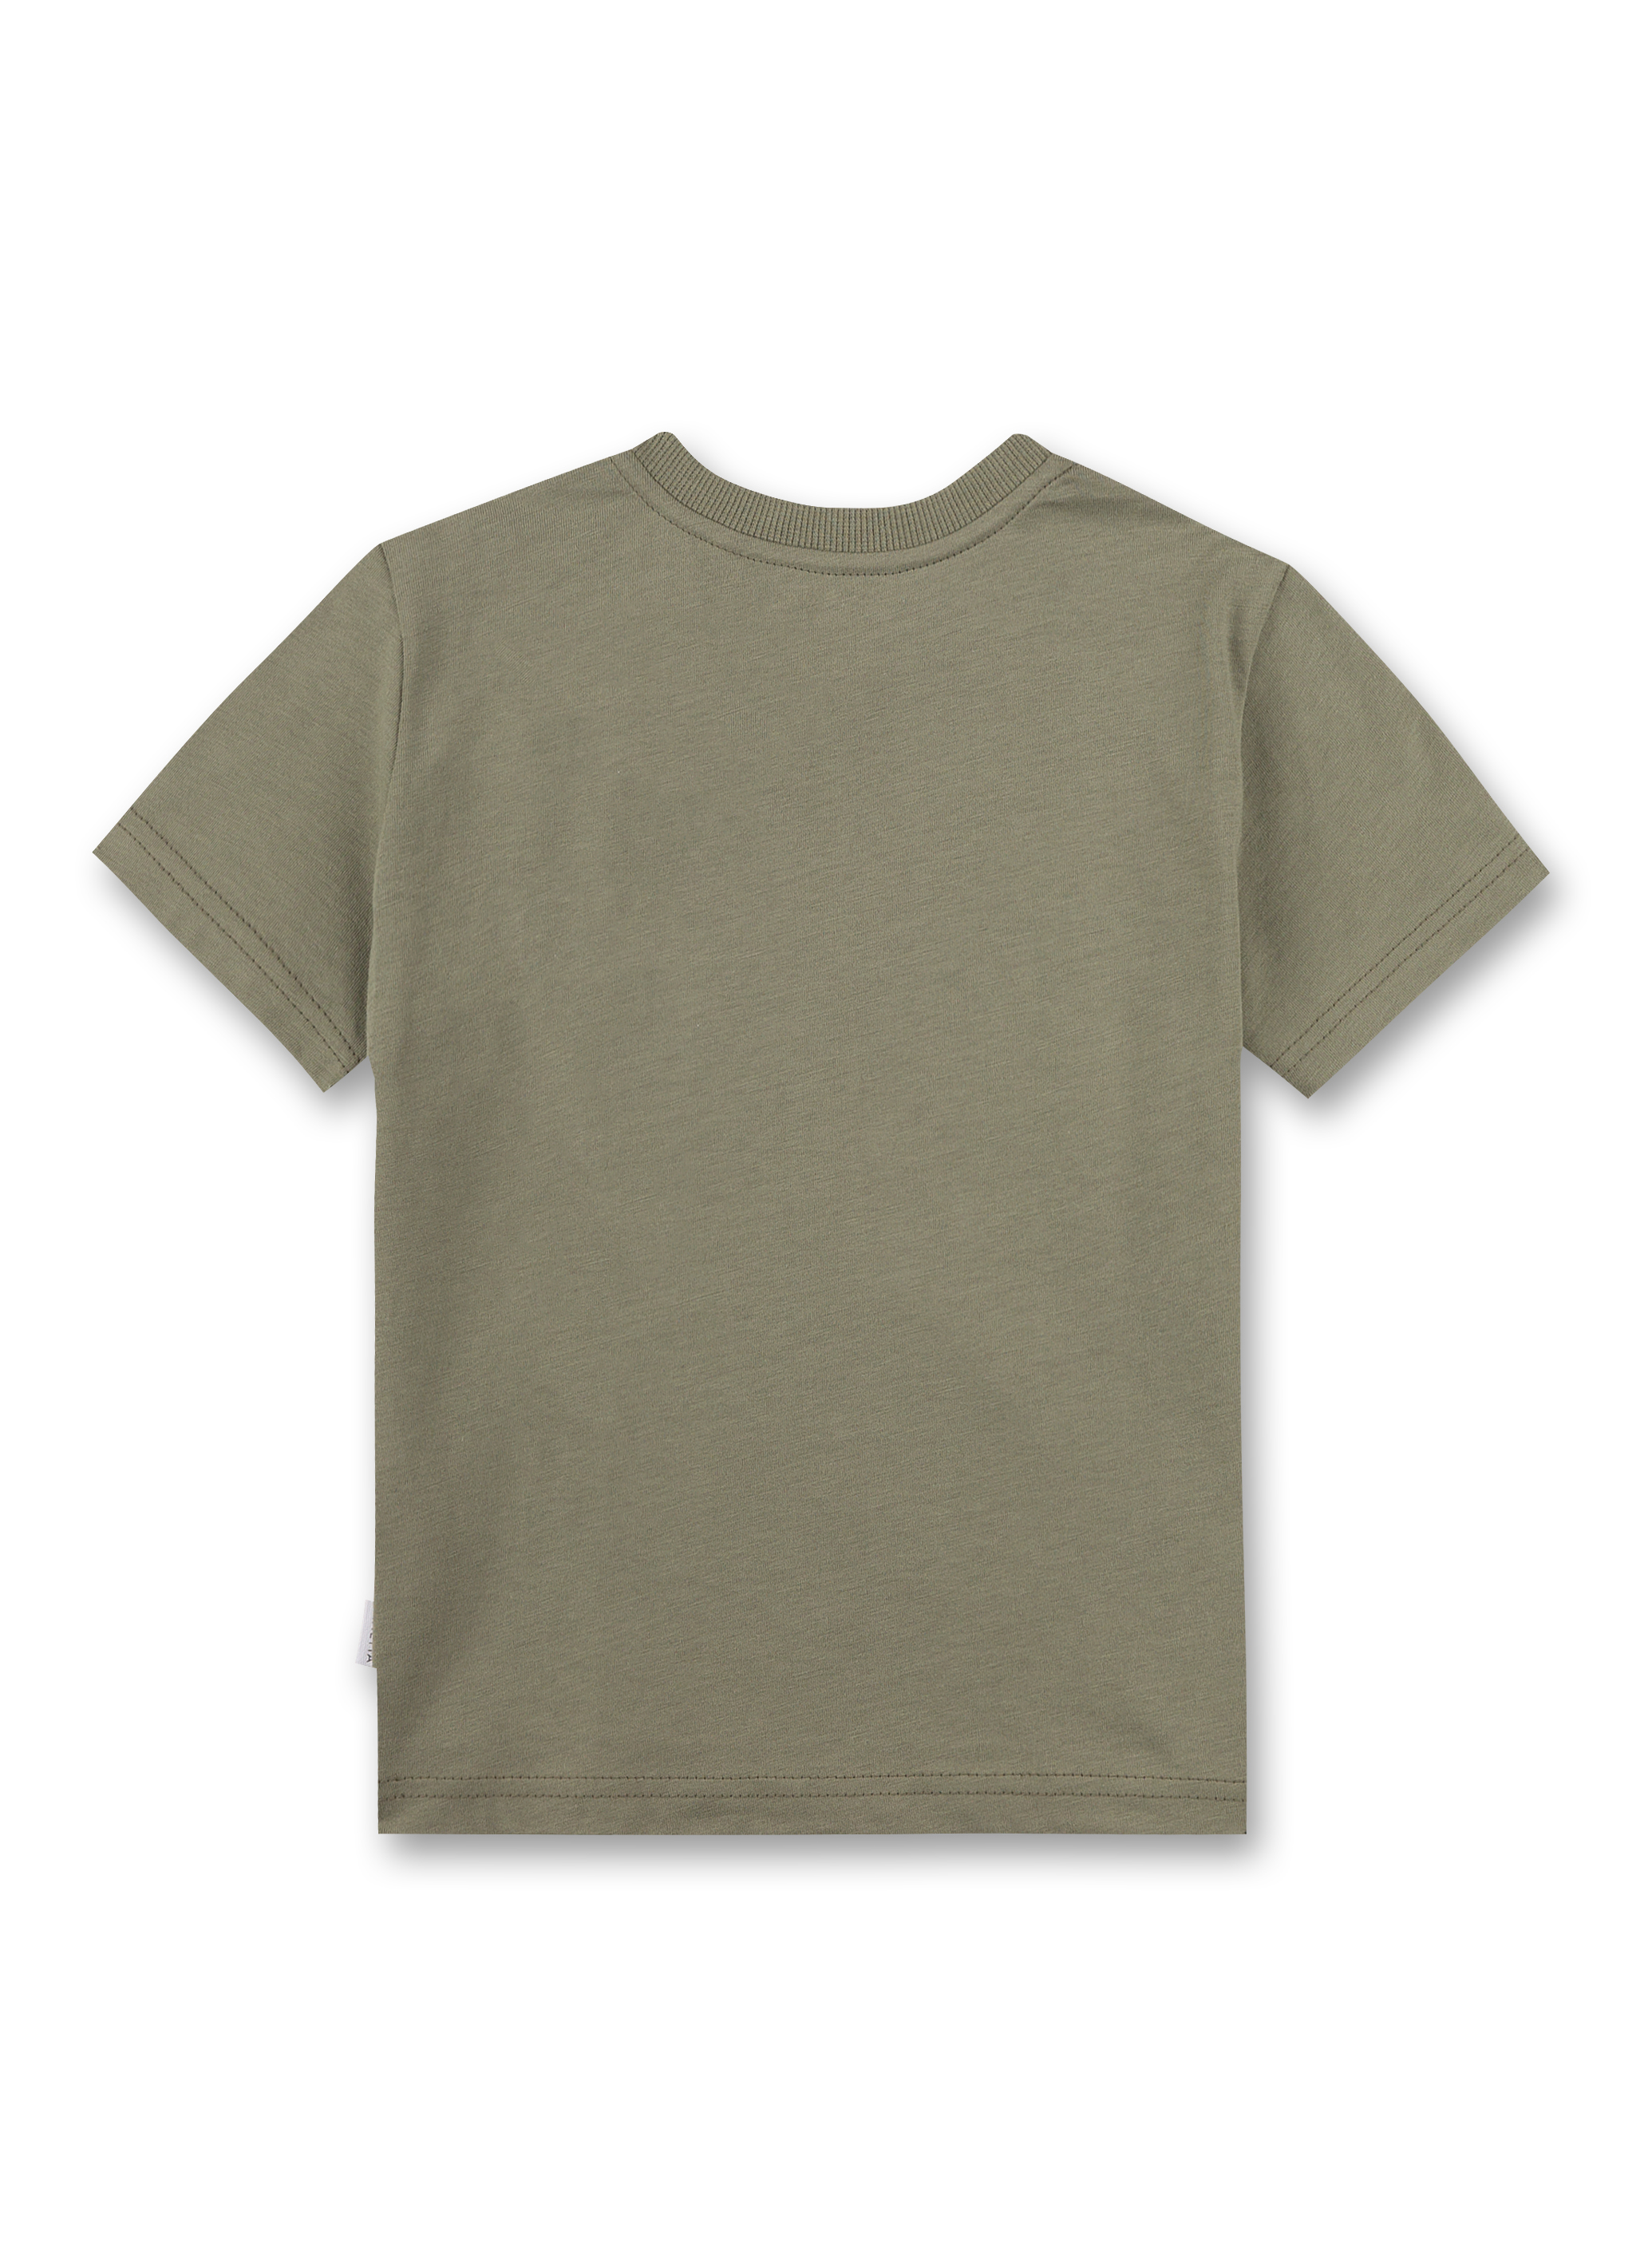 Jungen T-Shirt Grün